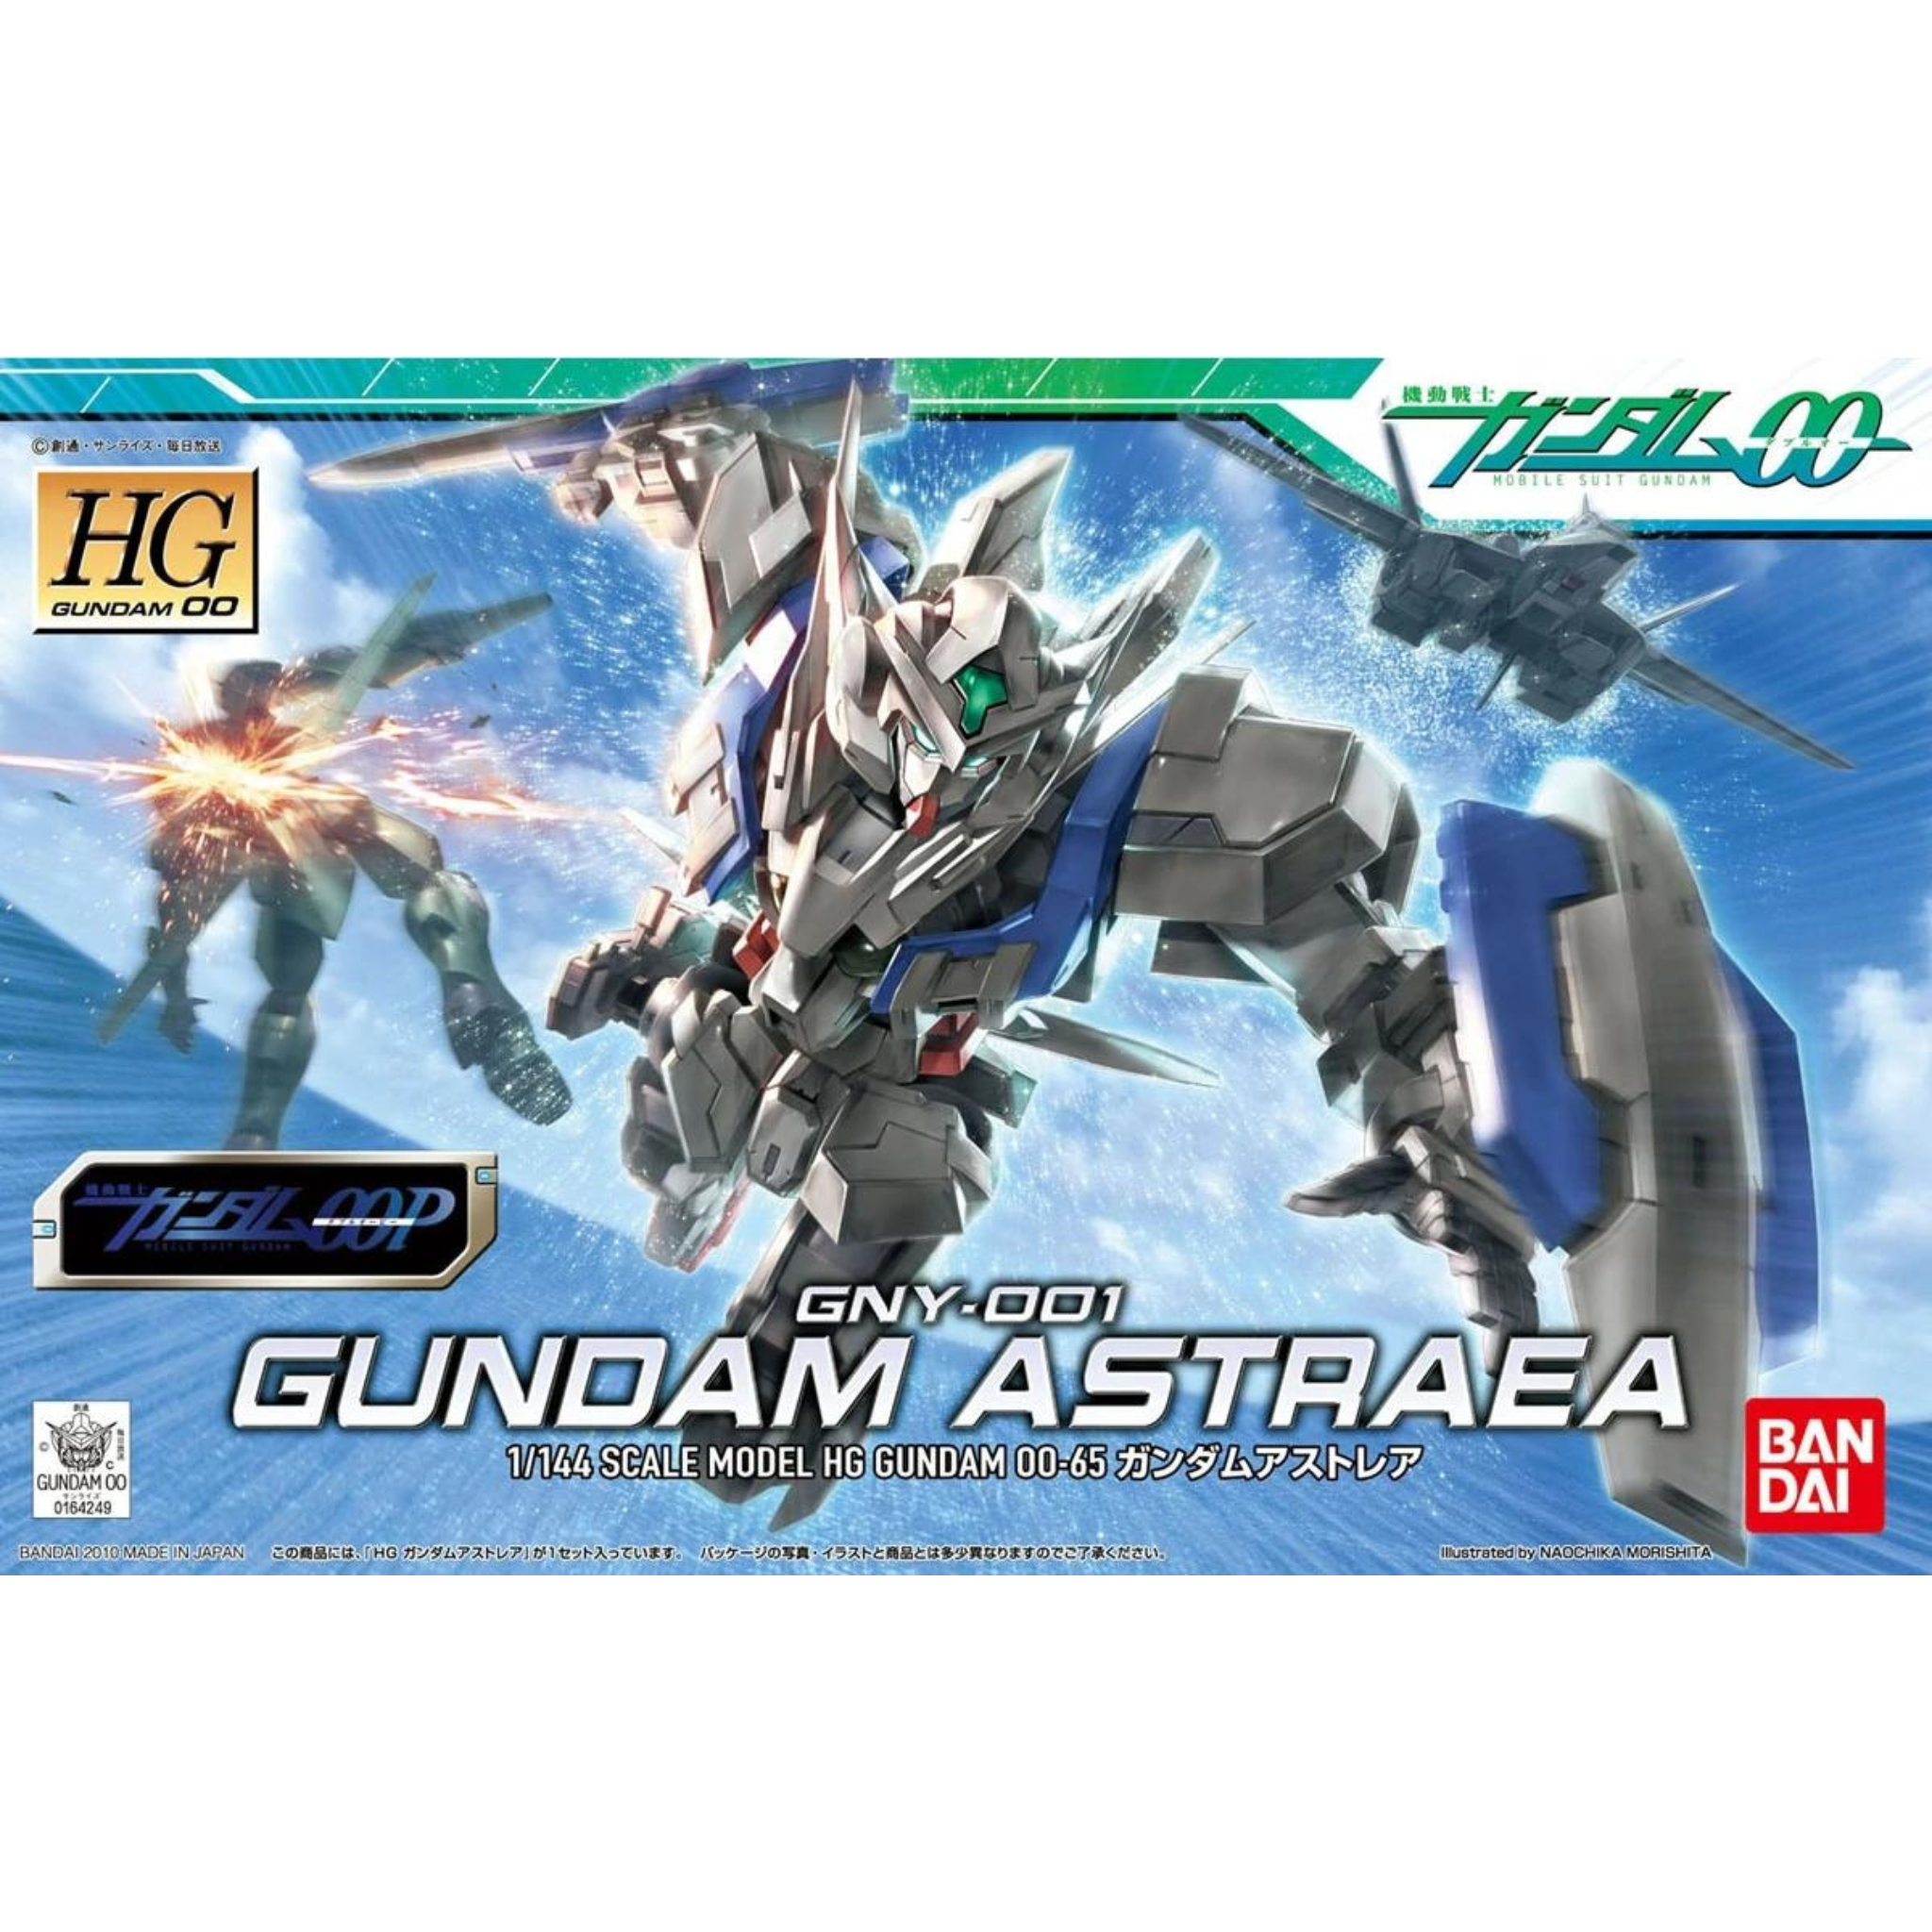 HG 1/144 Gundam 00 #65 GNY-001 Gundam Astraea #0164249 by Bandai